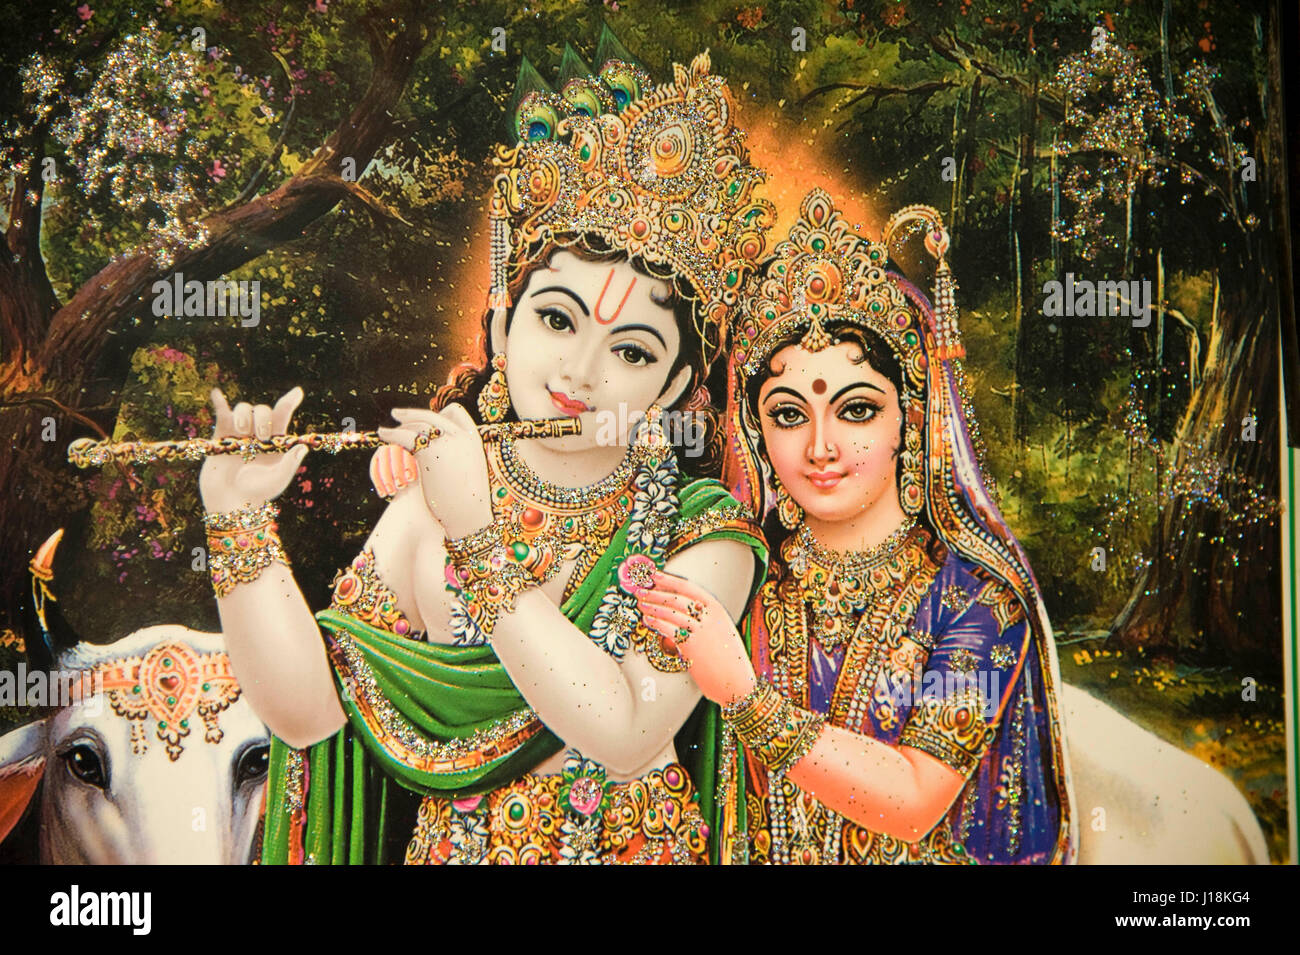 Radha krishna painting, vrindavan, uttar pradesh, india, asia Stock Photo